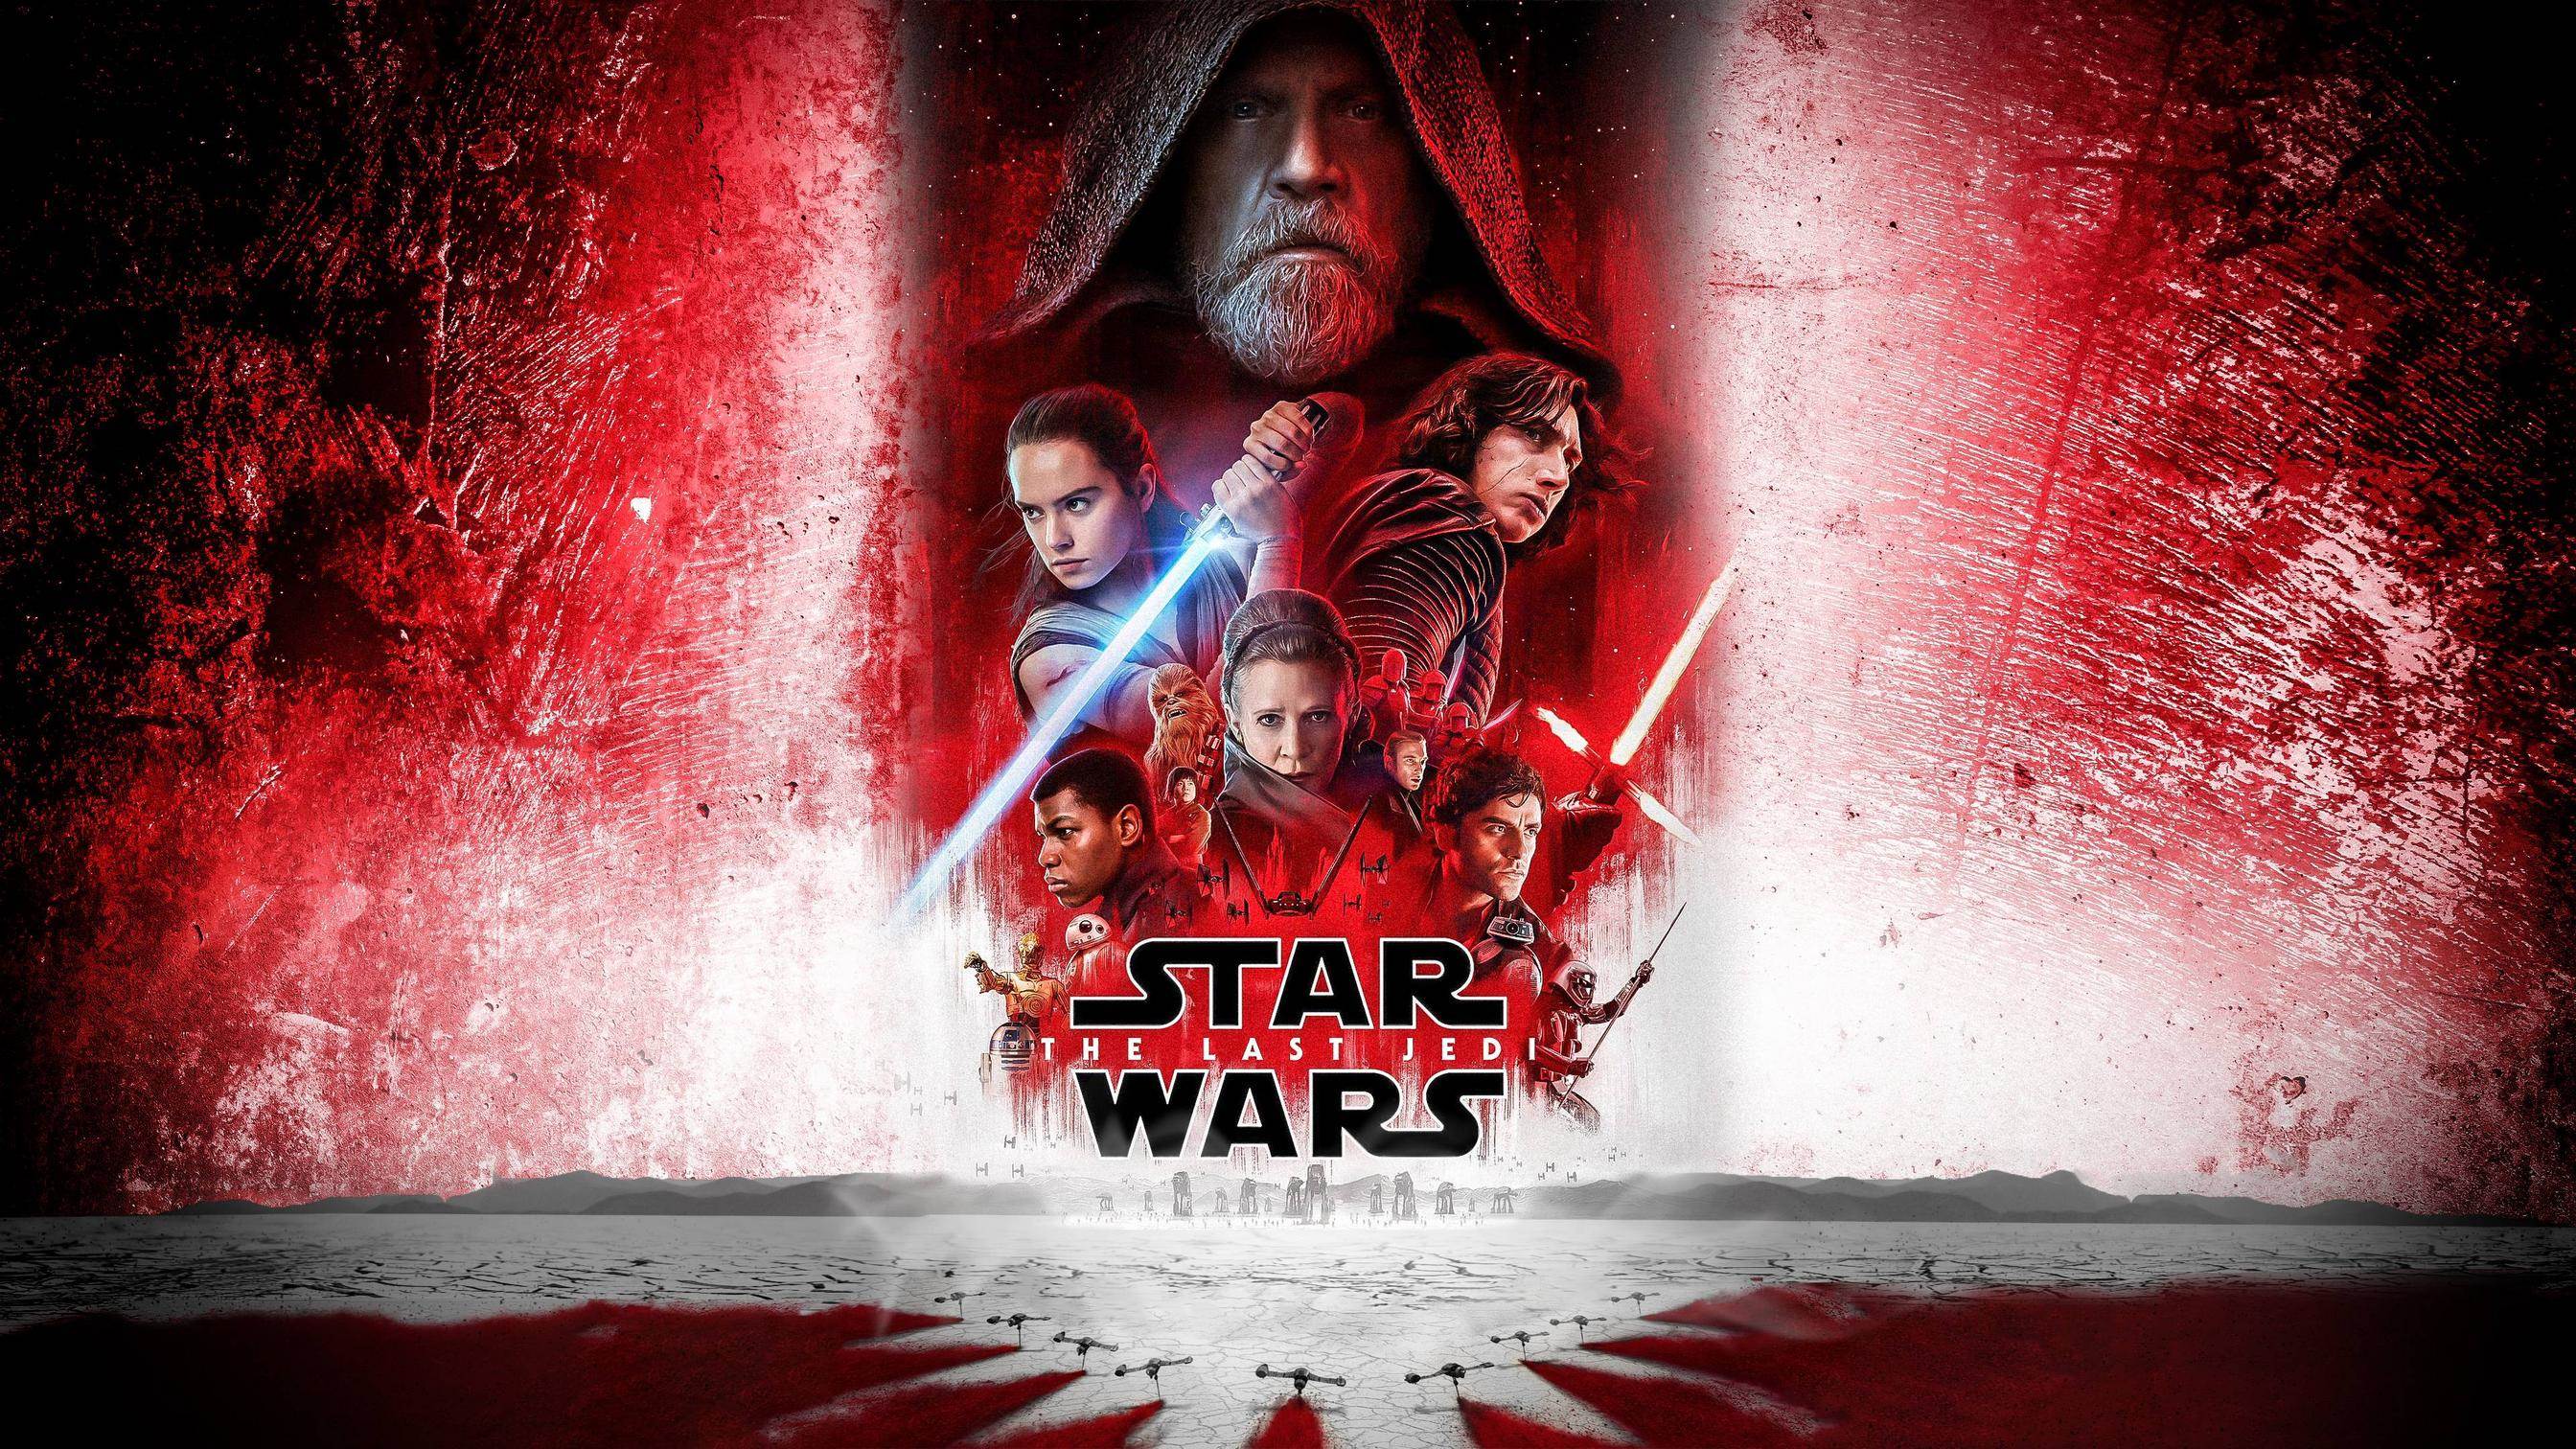 Star Wars: The Last Jedi 2017 Wallpaper